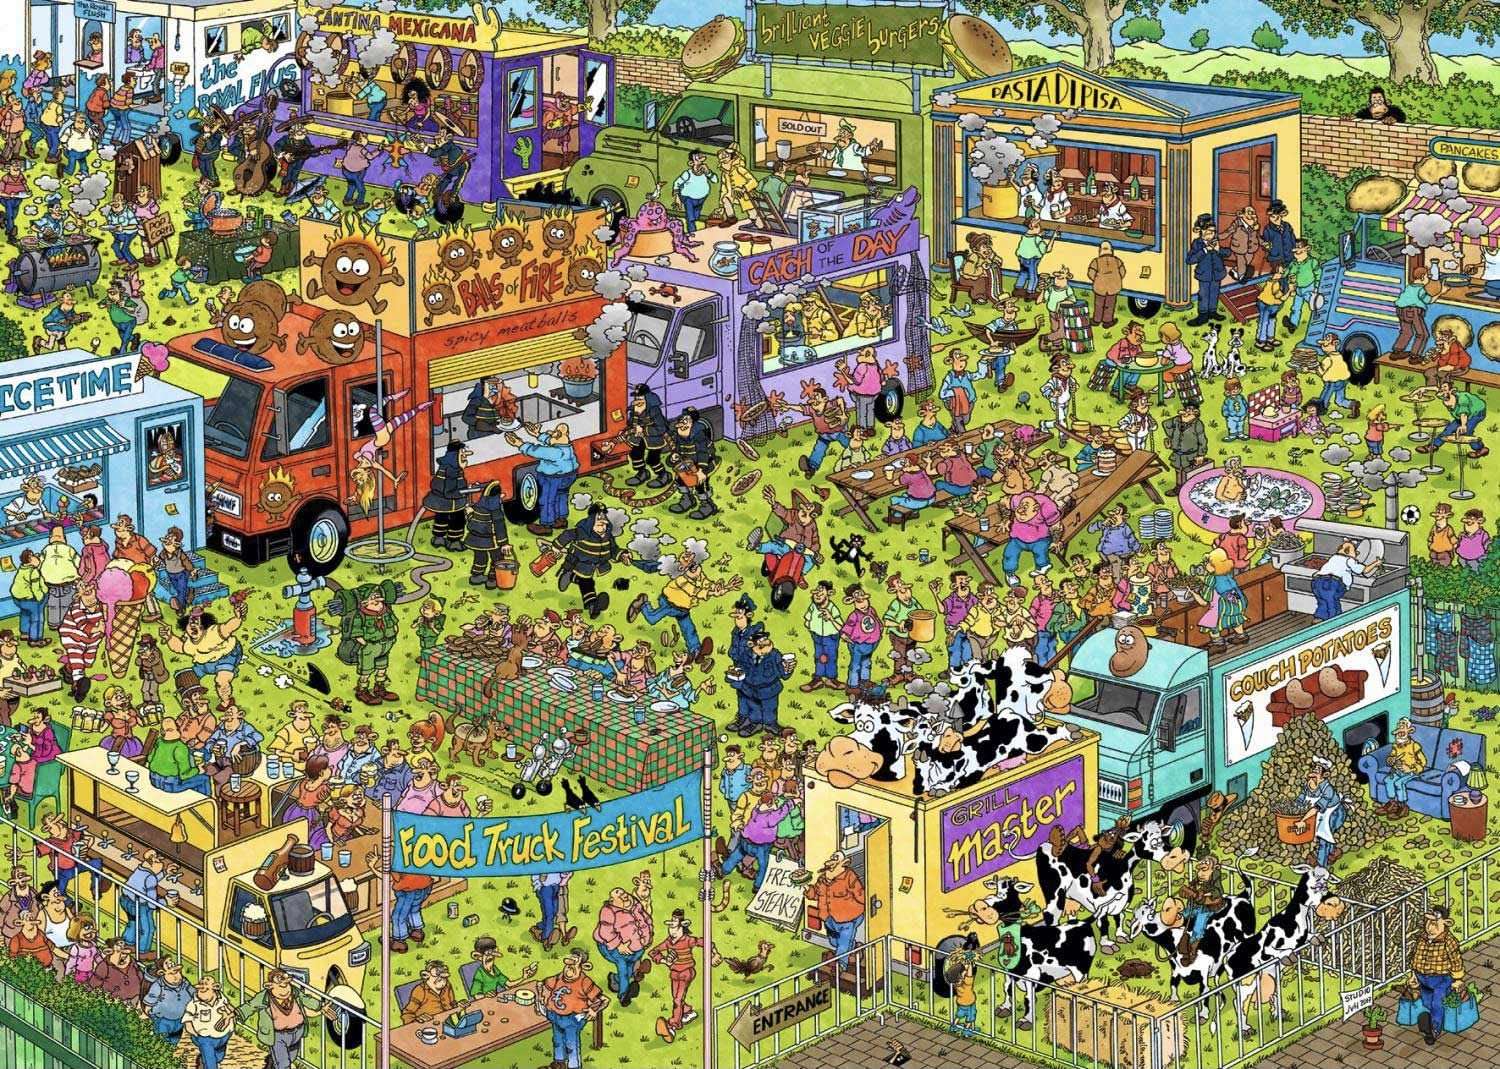 Festival de food trucks puzzle online